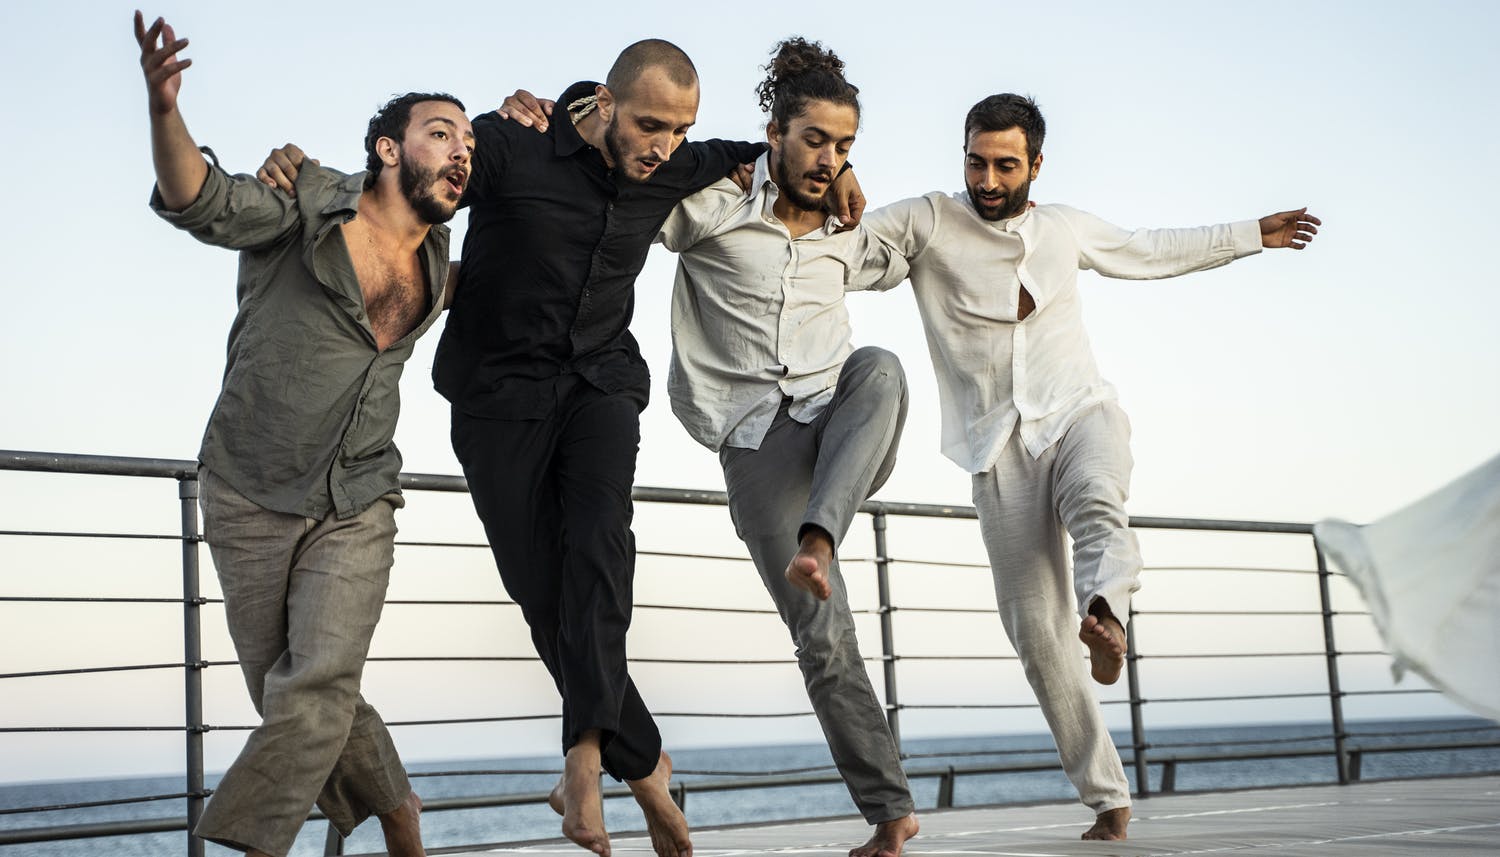 Quattro uomini sono uno a fianco dell'altro tenendosi sottobraccio. Nel ballare tengono le gambe incrociate con il piede sinistro avanti e i due danzatori laterali alzano in aria il braccio esterno.